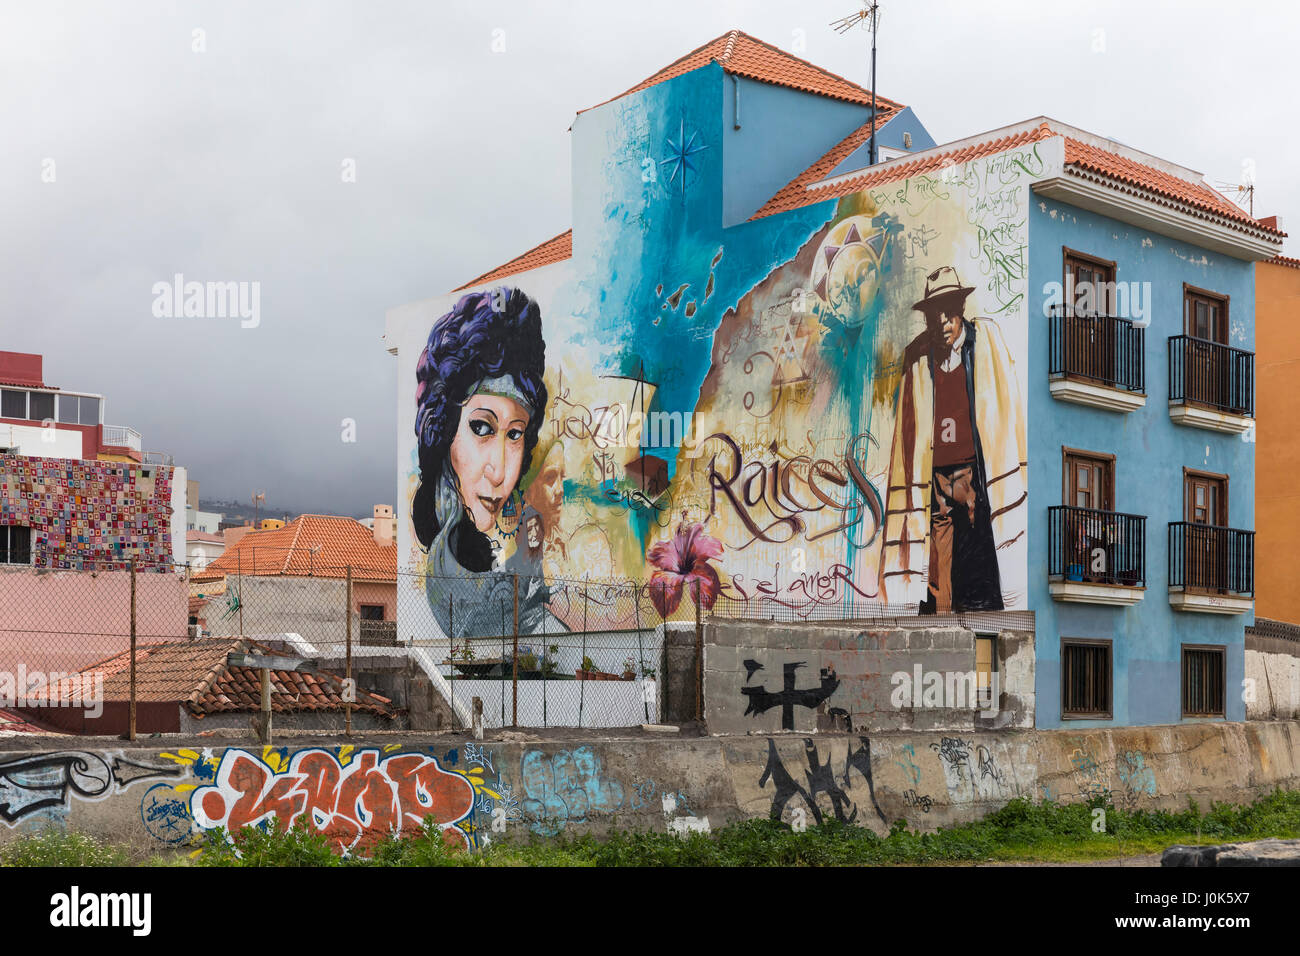 Street view with murals on the walls in Puerto de la Cruz, Tenerife, Spain  Stock Photo - Alamy